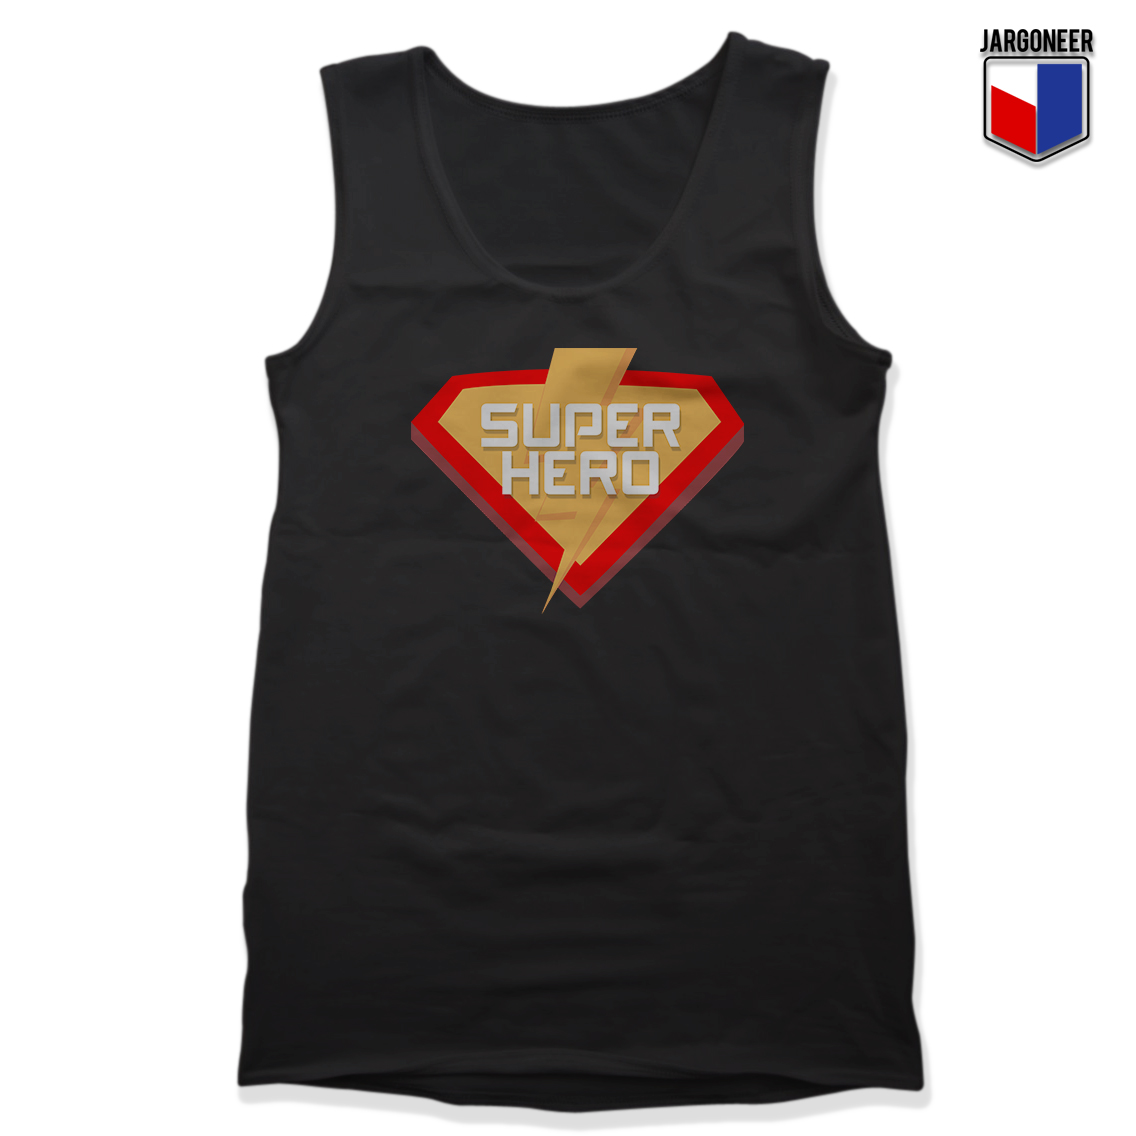 Super Hero Black Tank - Shop Unique Graphic Cool Shirt Designs